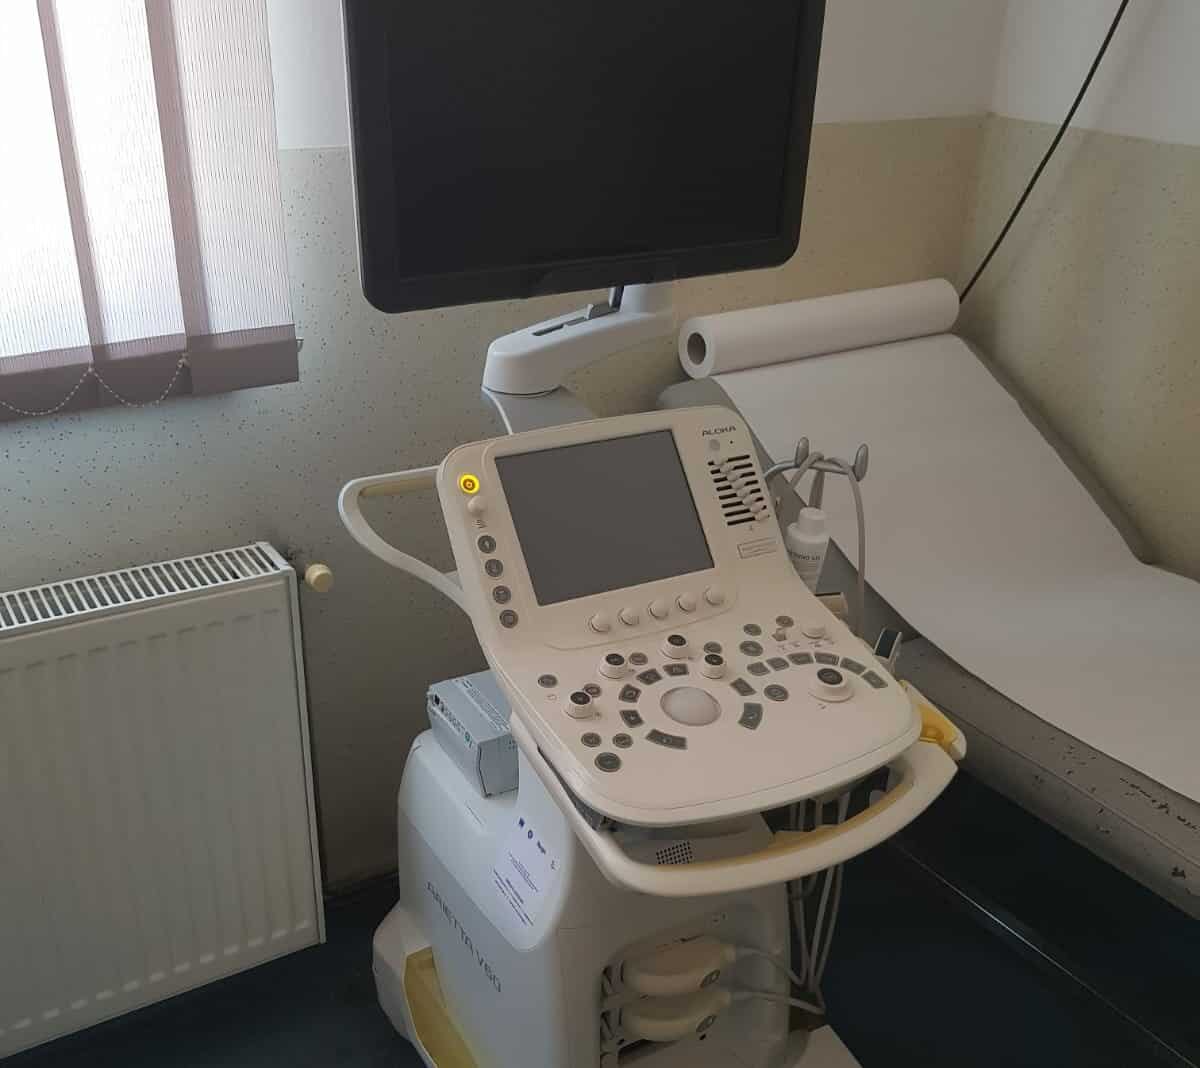 consiliul județean sibiu a dotat ambulatoriul de specialitate al spitalului de pneumoftiziologie cu aparatură de ultimă generație